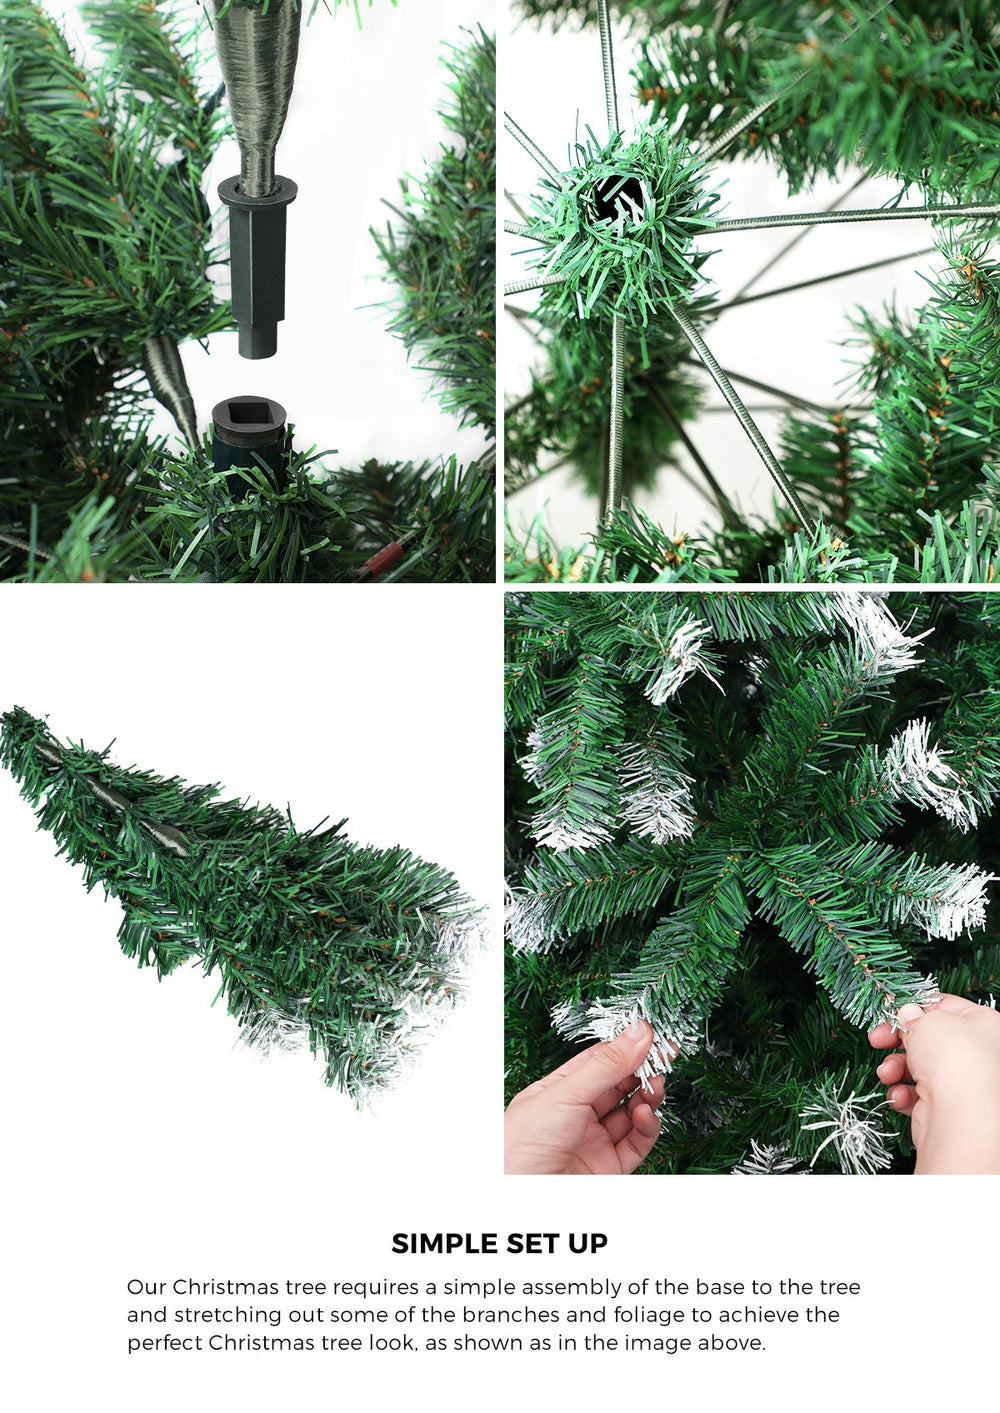 Mazam Christmas Tree 2.4M 8FT Xmas Trees Snowy Decorations Green 1480 Tips